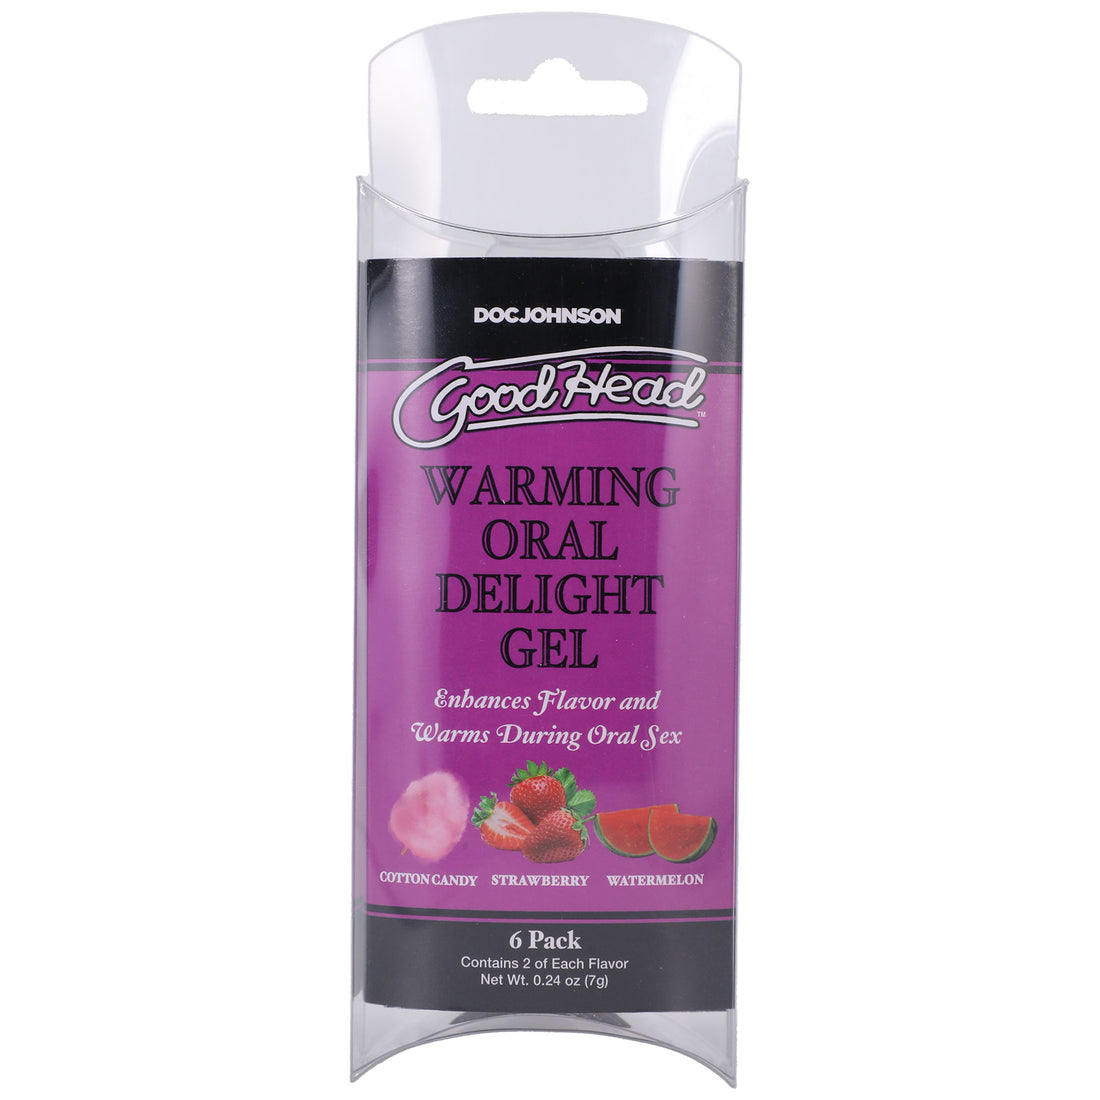 Goodhead - Warming Head Oral Delight Gel - 6 Pack  - 0.24 Oz DJ1387-43-BX